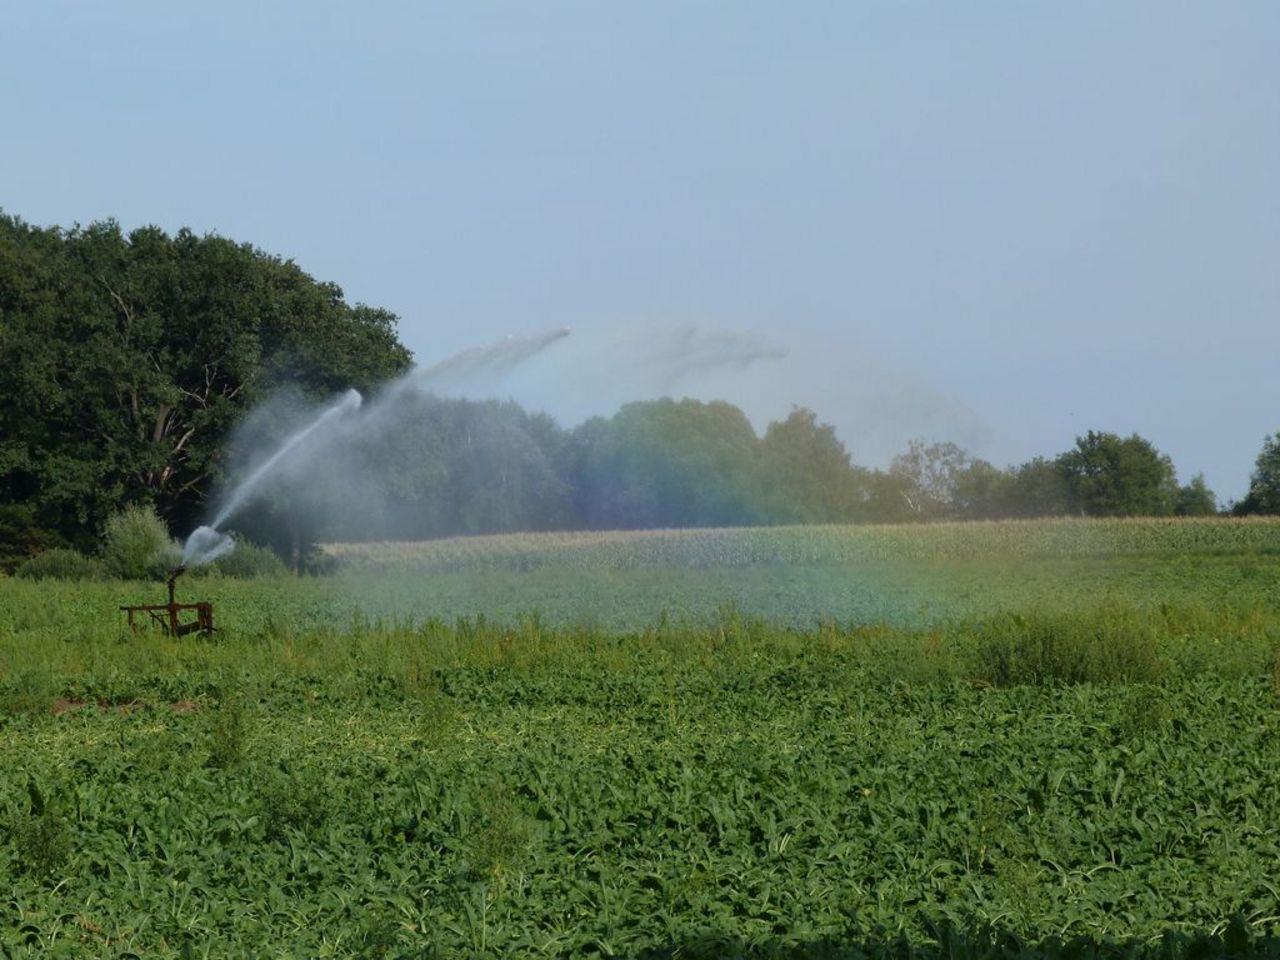 Entstehen eines Regenbogens durch das herabfallende Wasser aus einer Bewässerungskanone über einem Zuckerrübenfeld